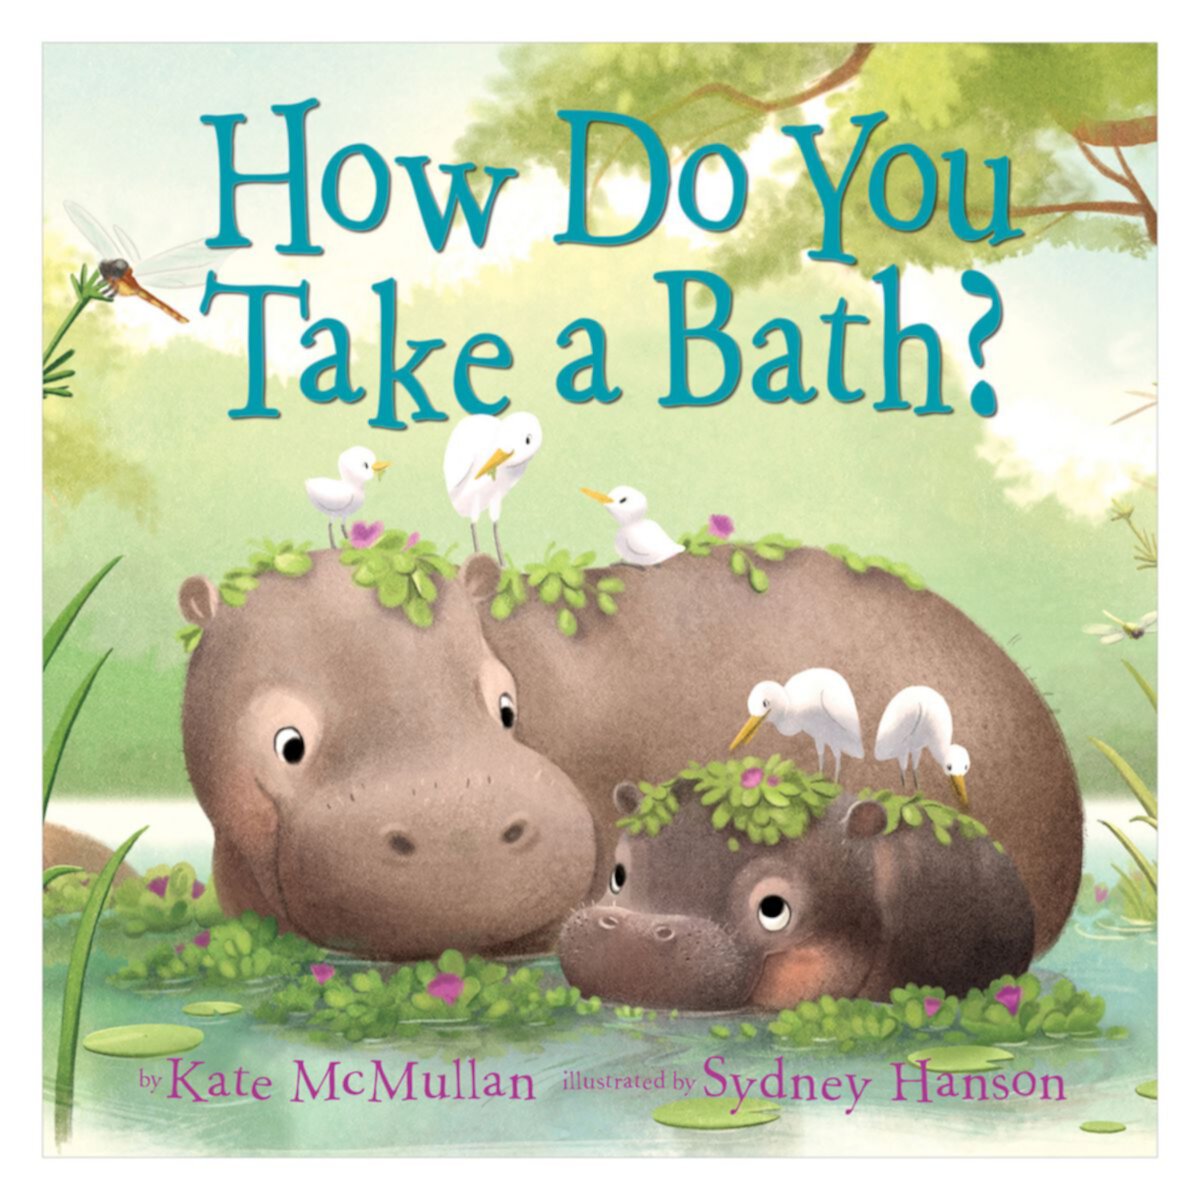 How Do You Take a Bath? Children's Book Penguin Random House